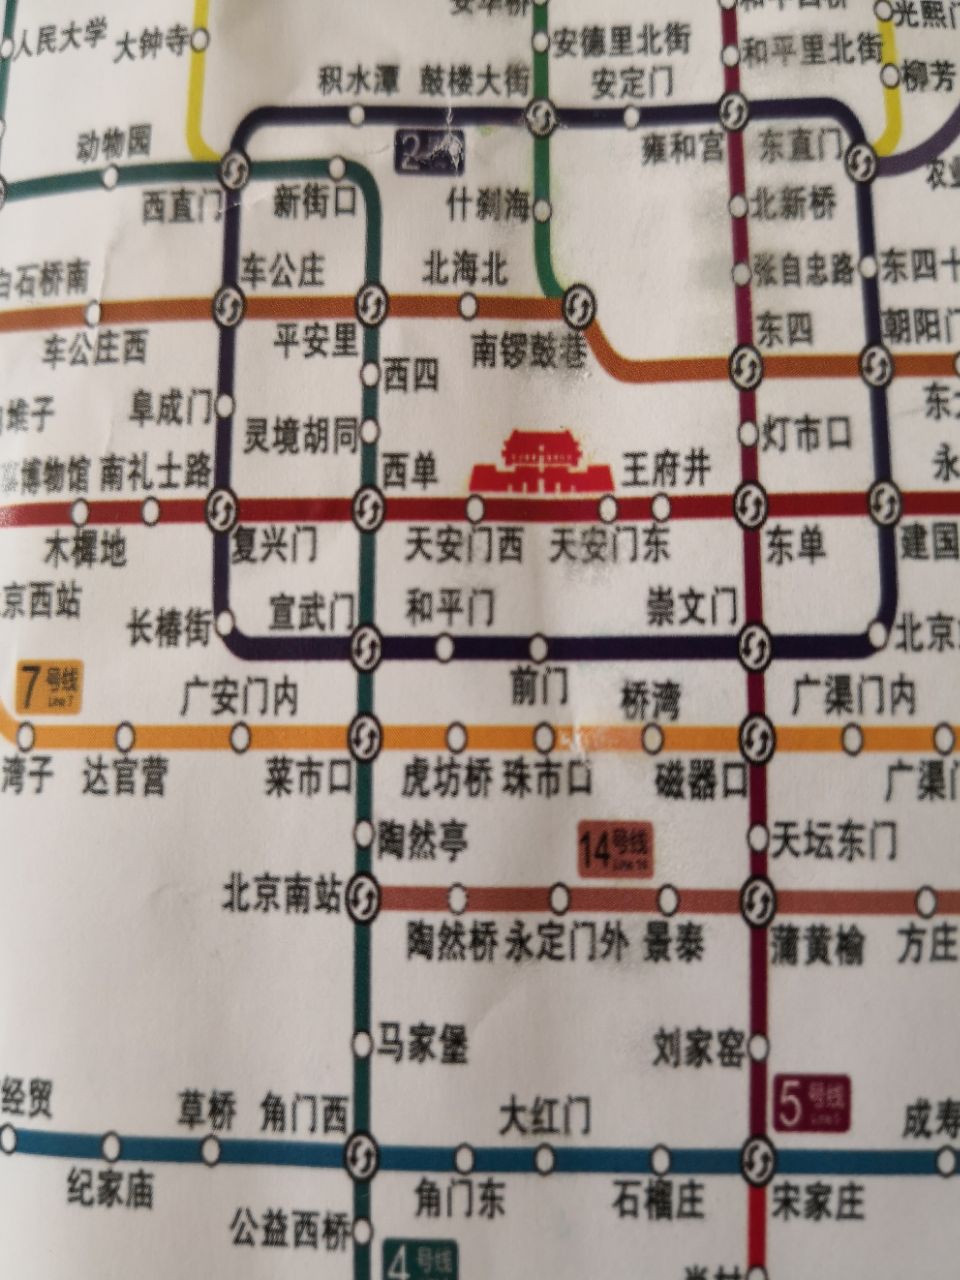 北京南站到故宫做什么地铁